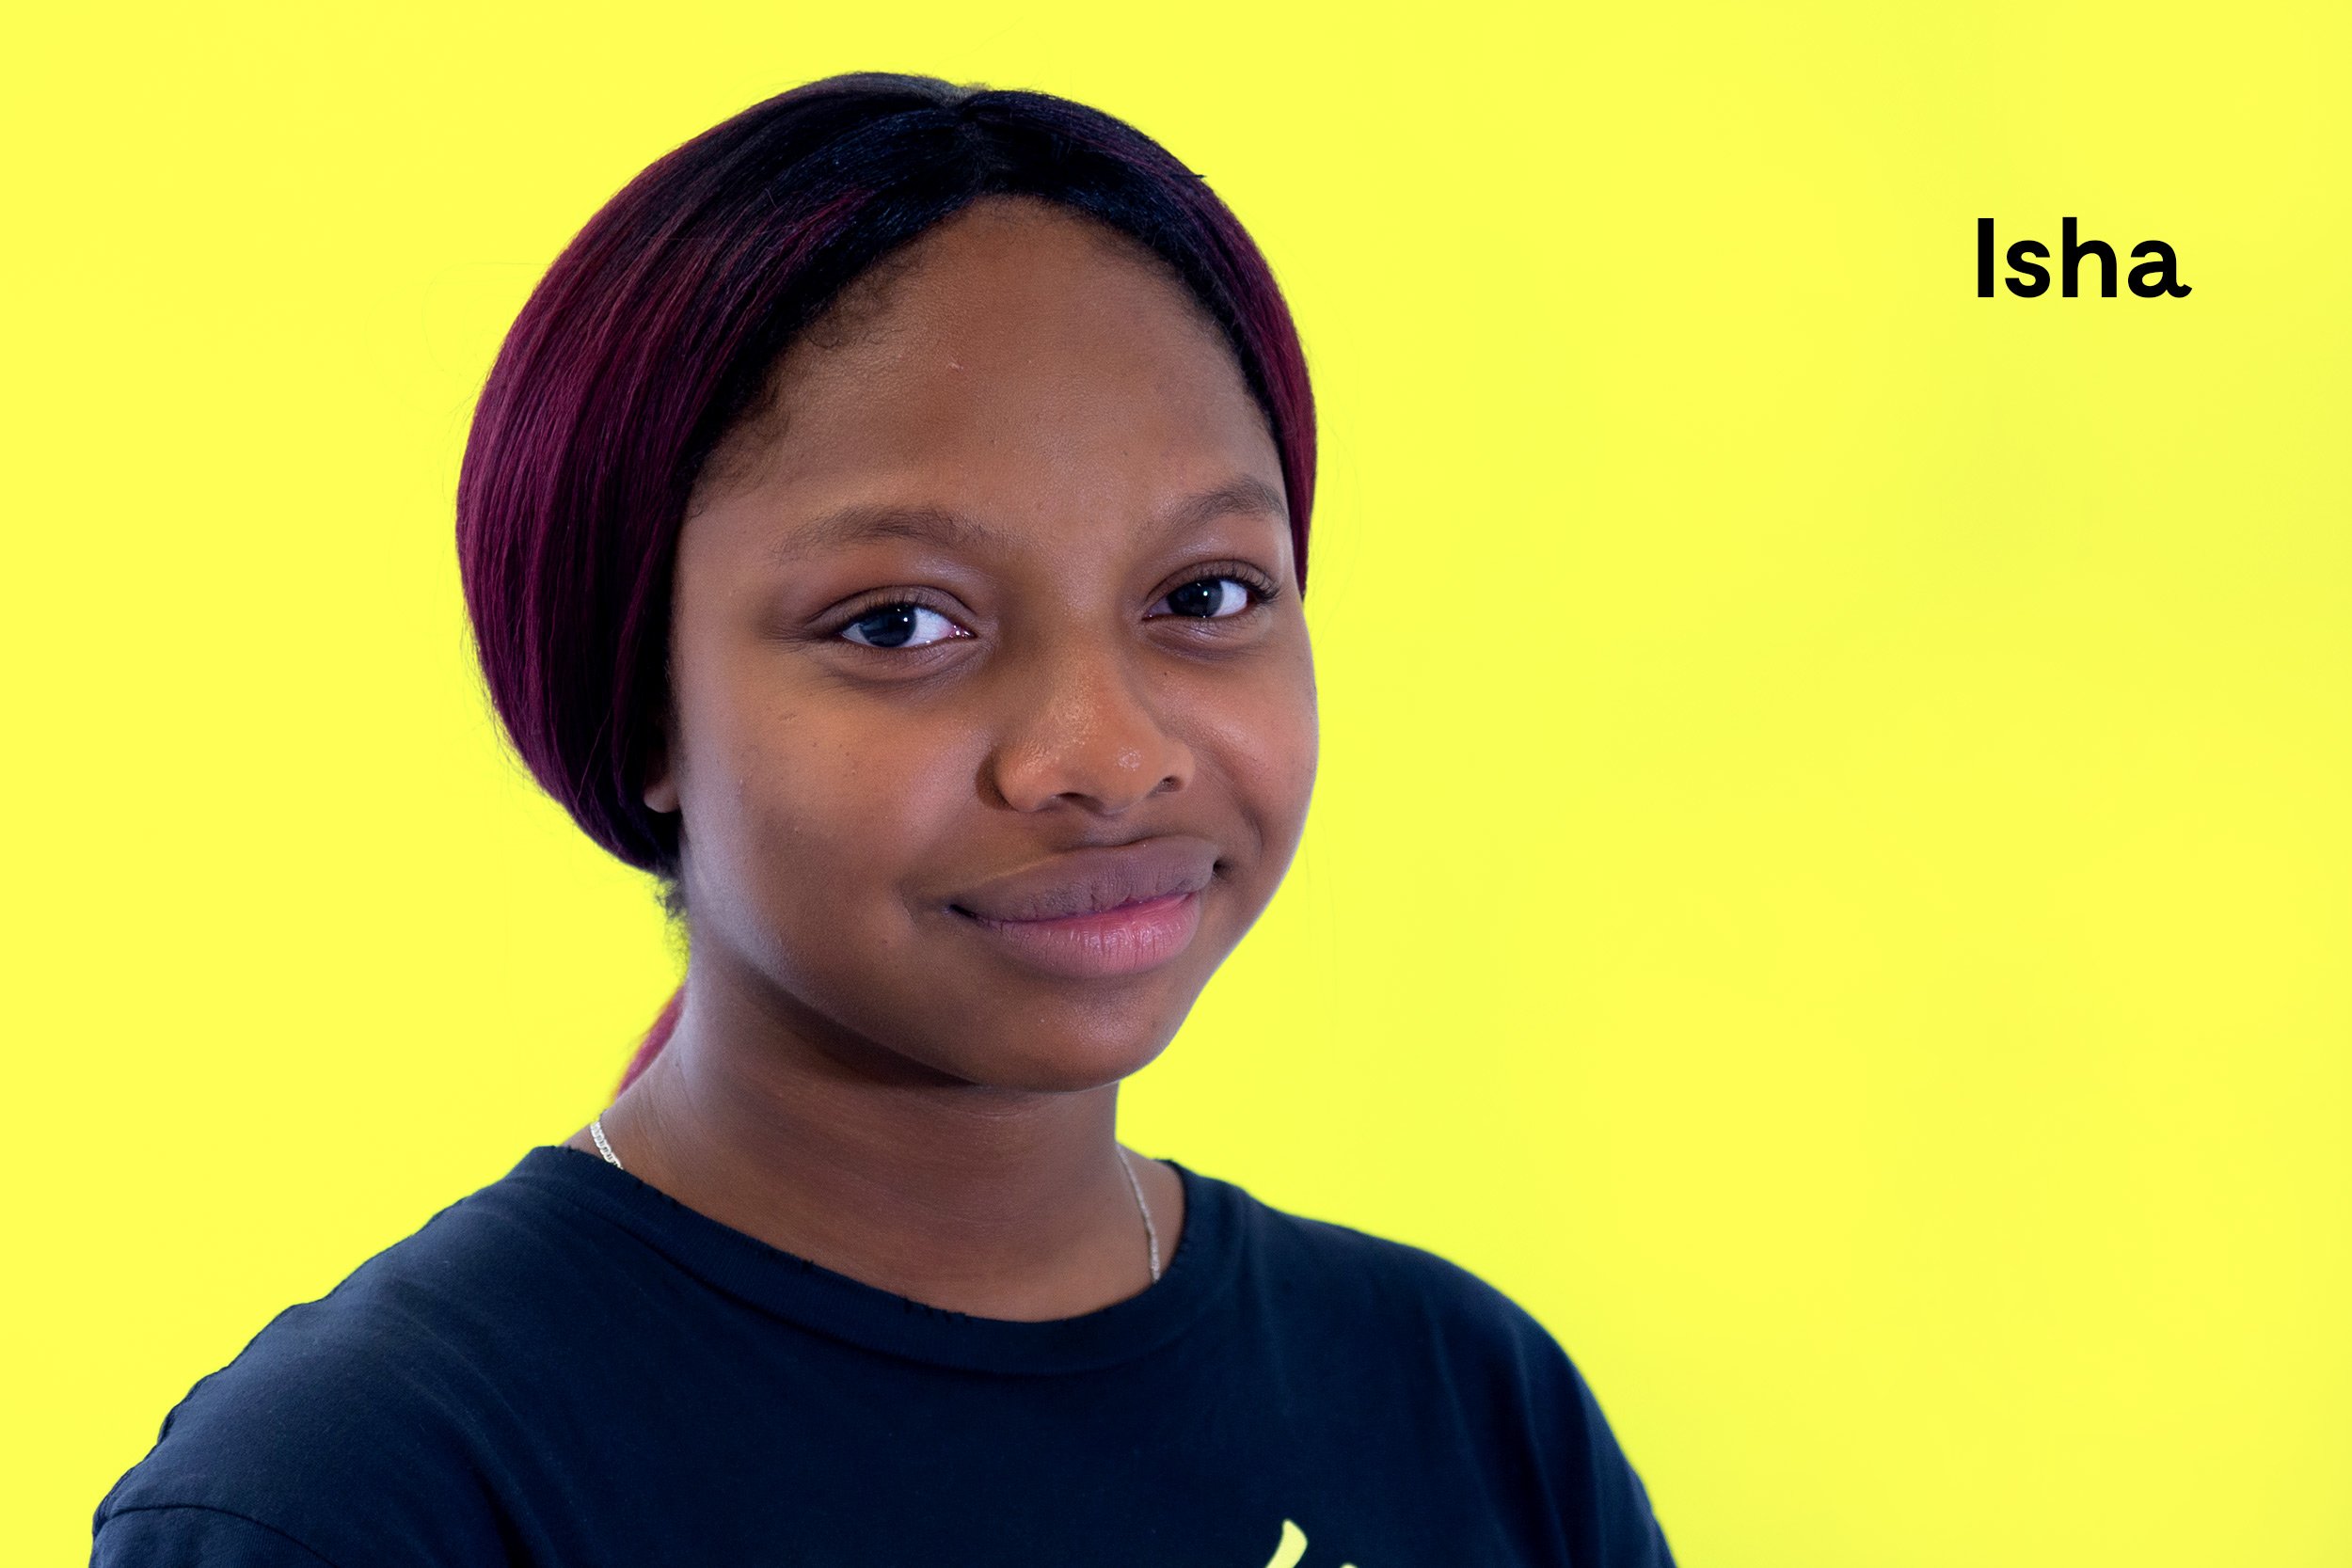  Isha Sheriff (née en 2006) est une élève de 10e année qui se passionne pour l'art, la pâtisserie et le basketball. Elle aime et est fière de son héritage sierraléonais car c'est une culture peu connue au Québec. 